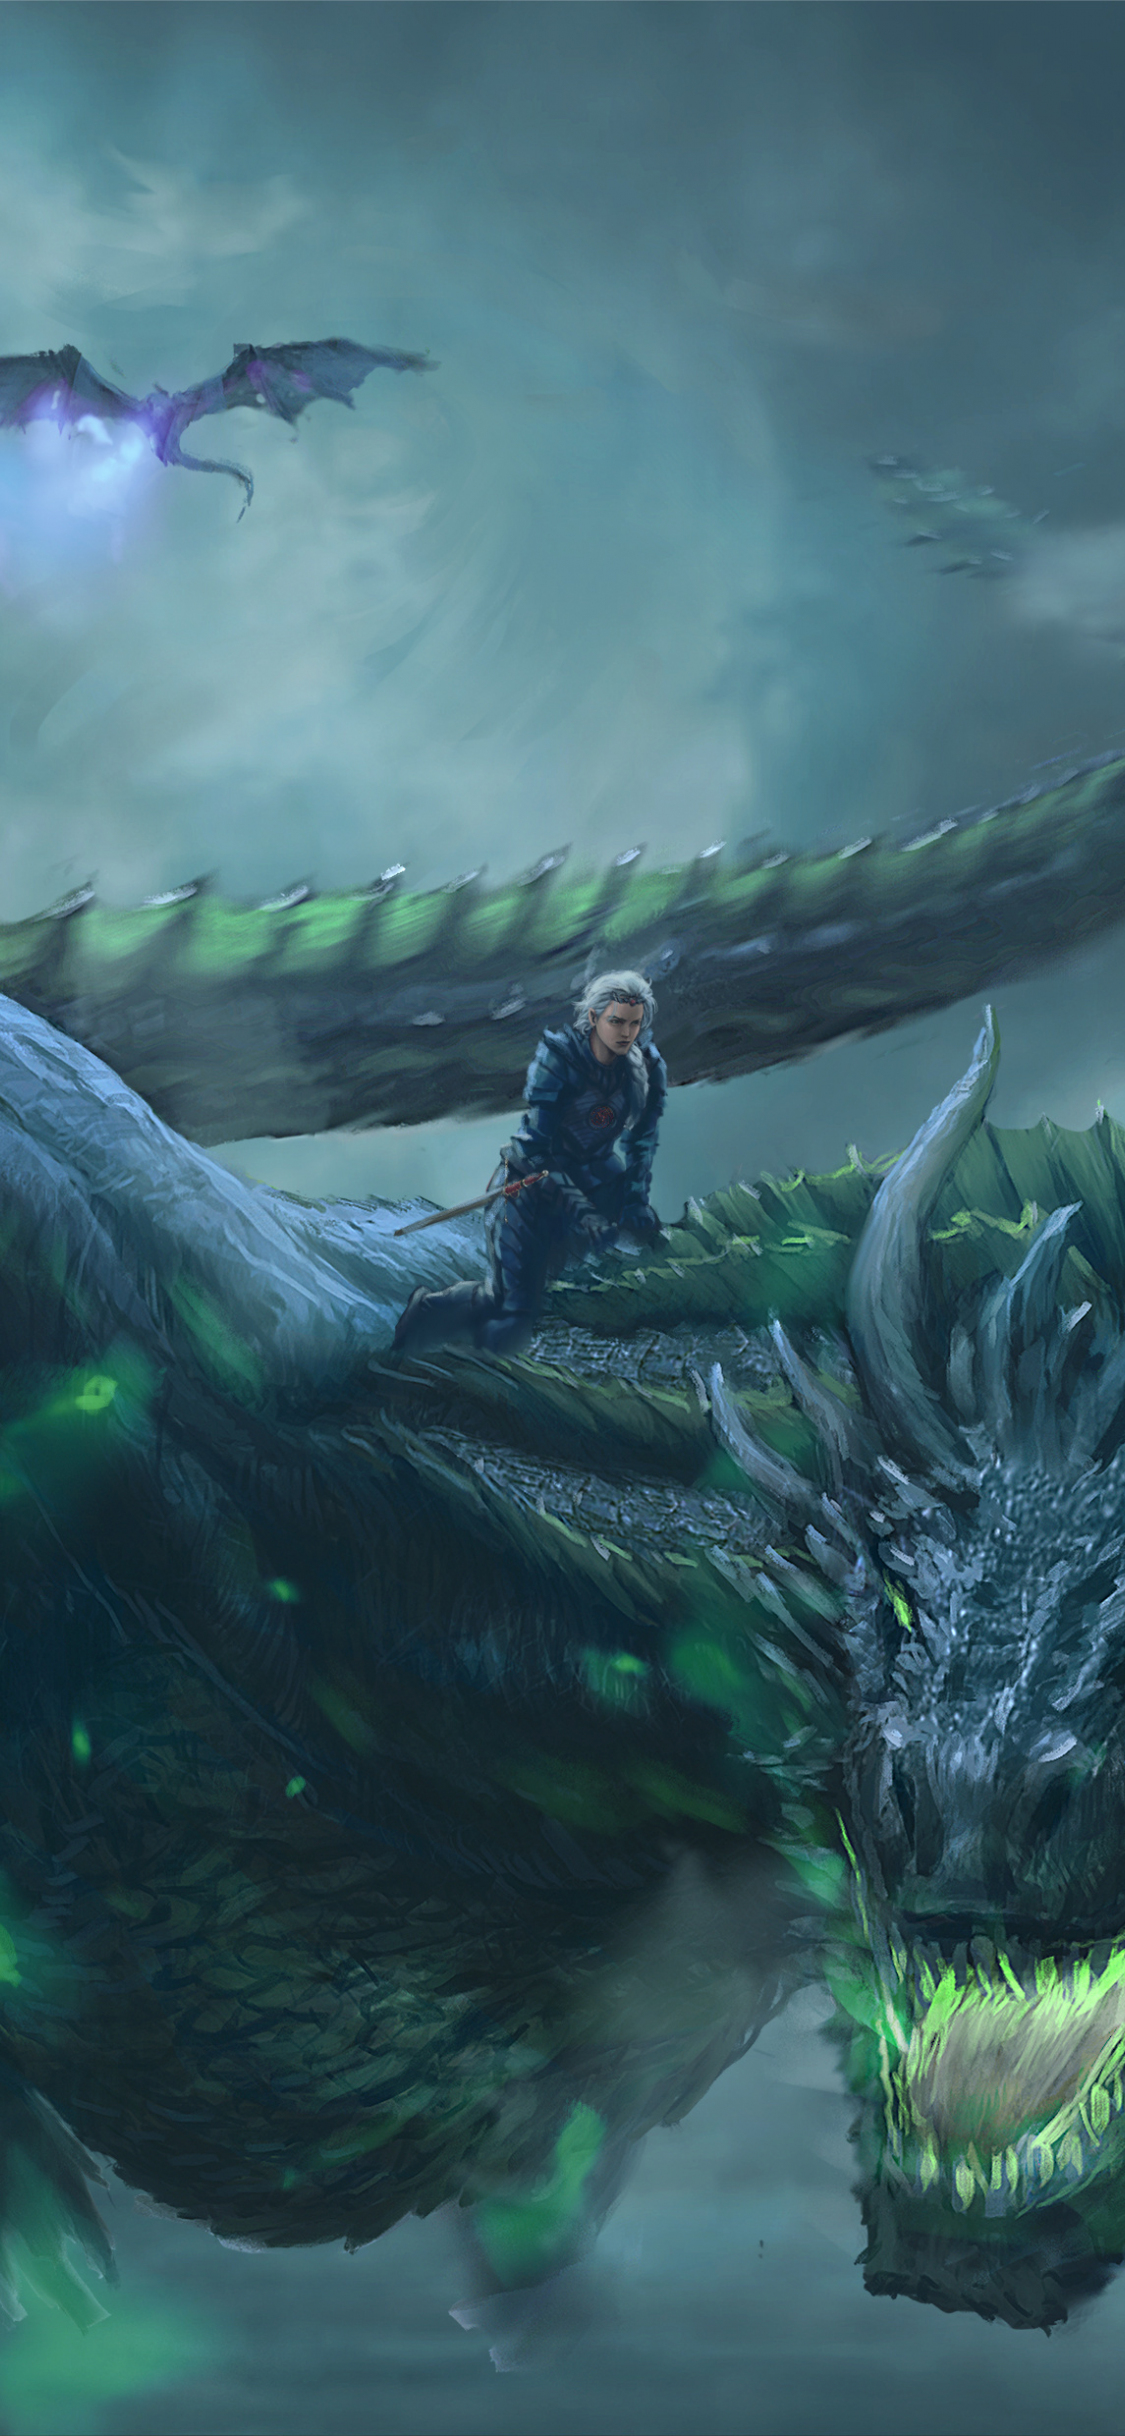 Game of Thrones  Daenerys Targaryen Dragon Fantasy 4K wallpaper download